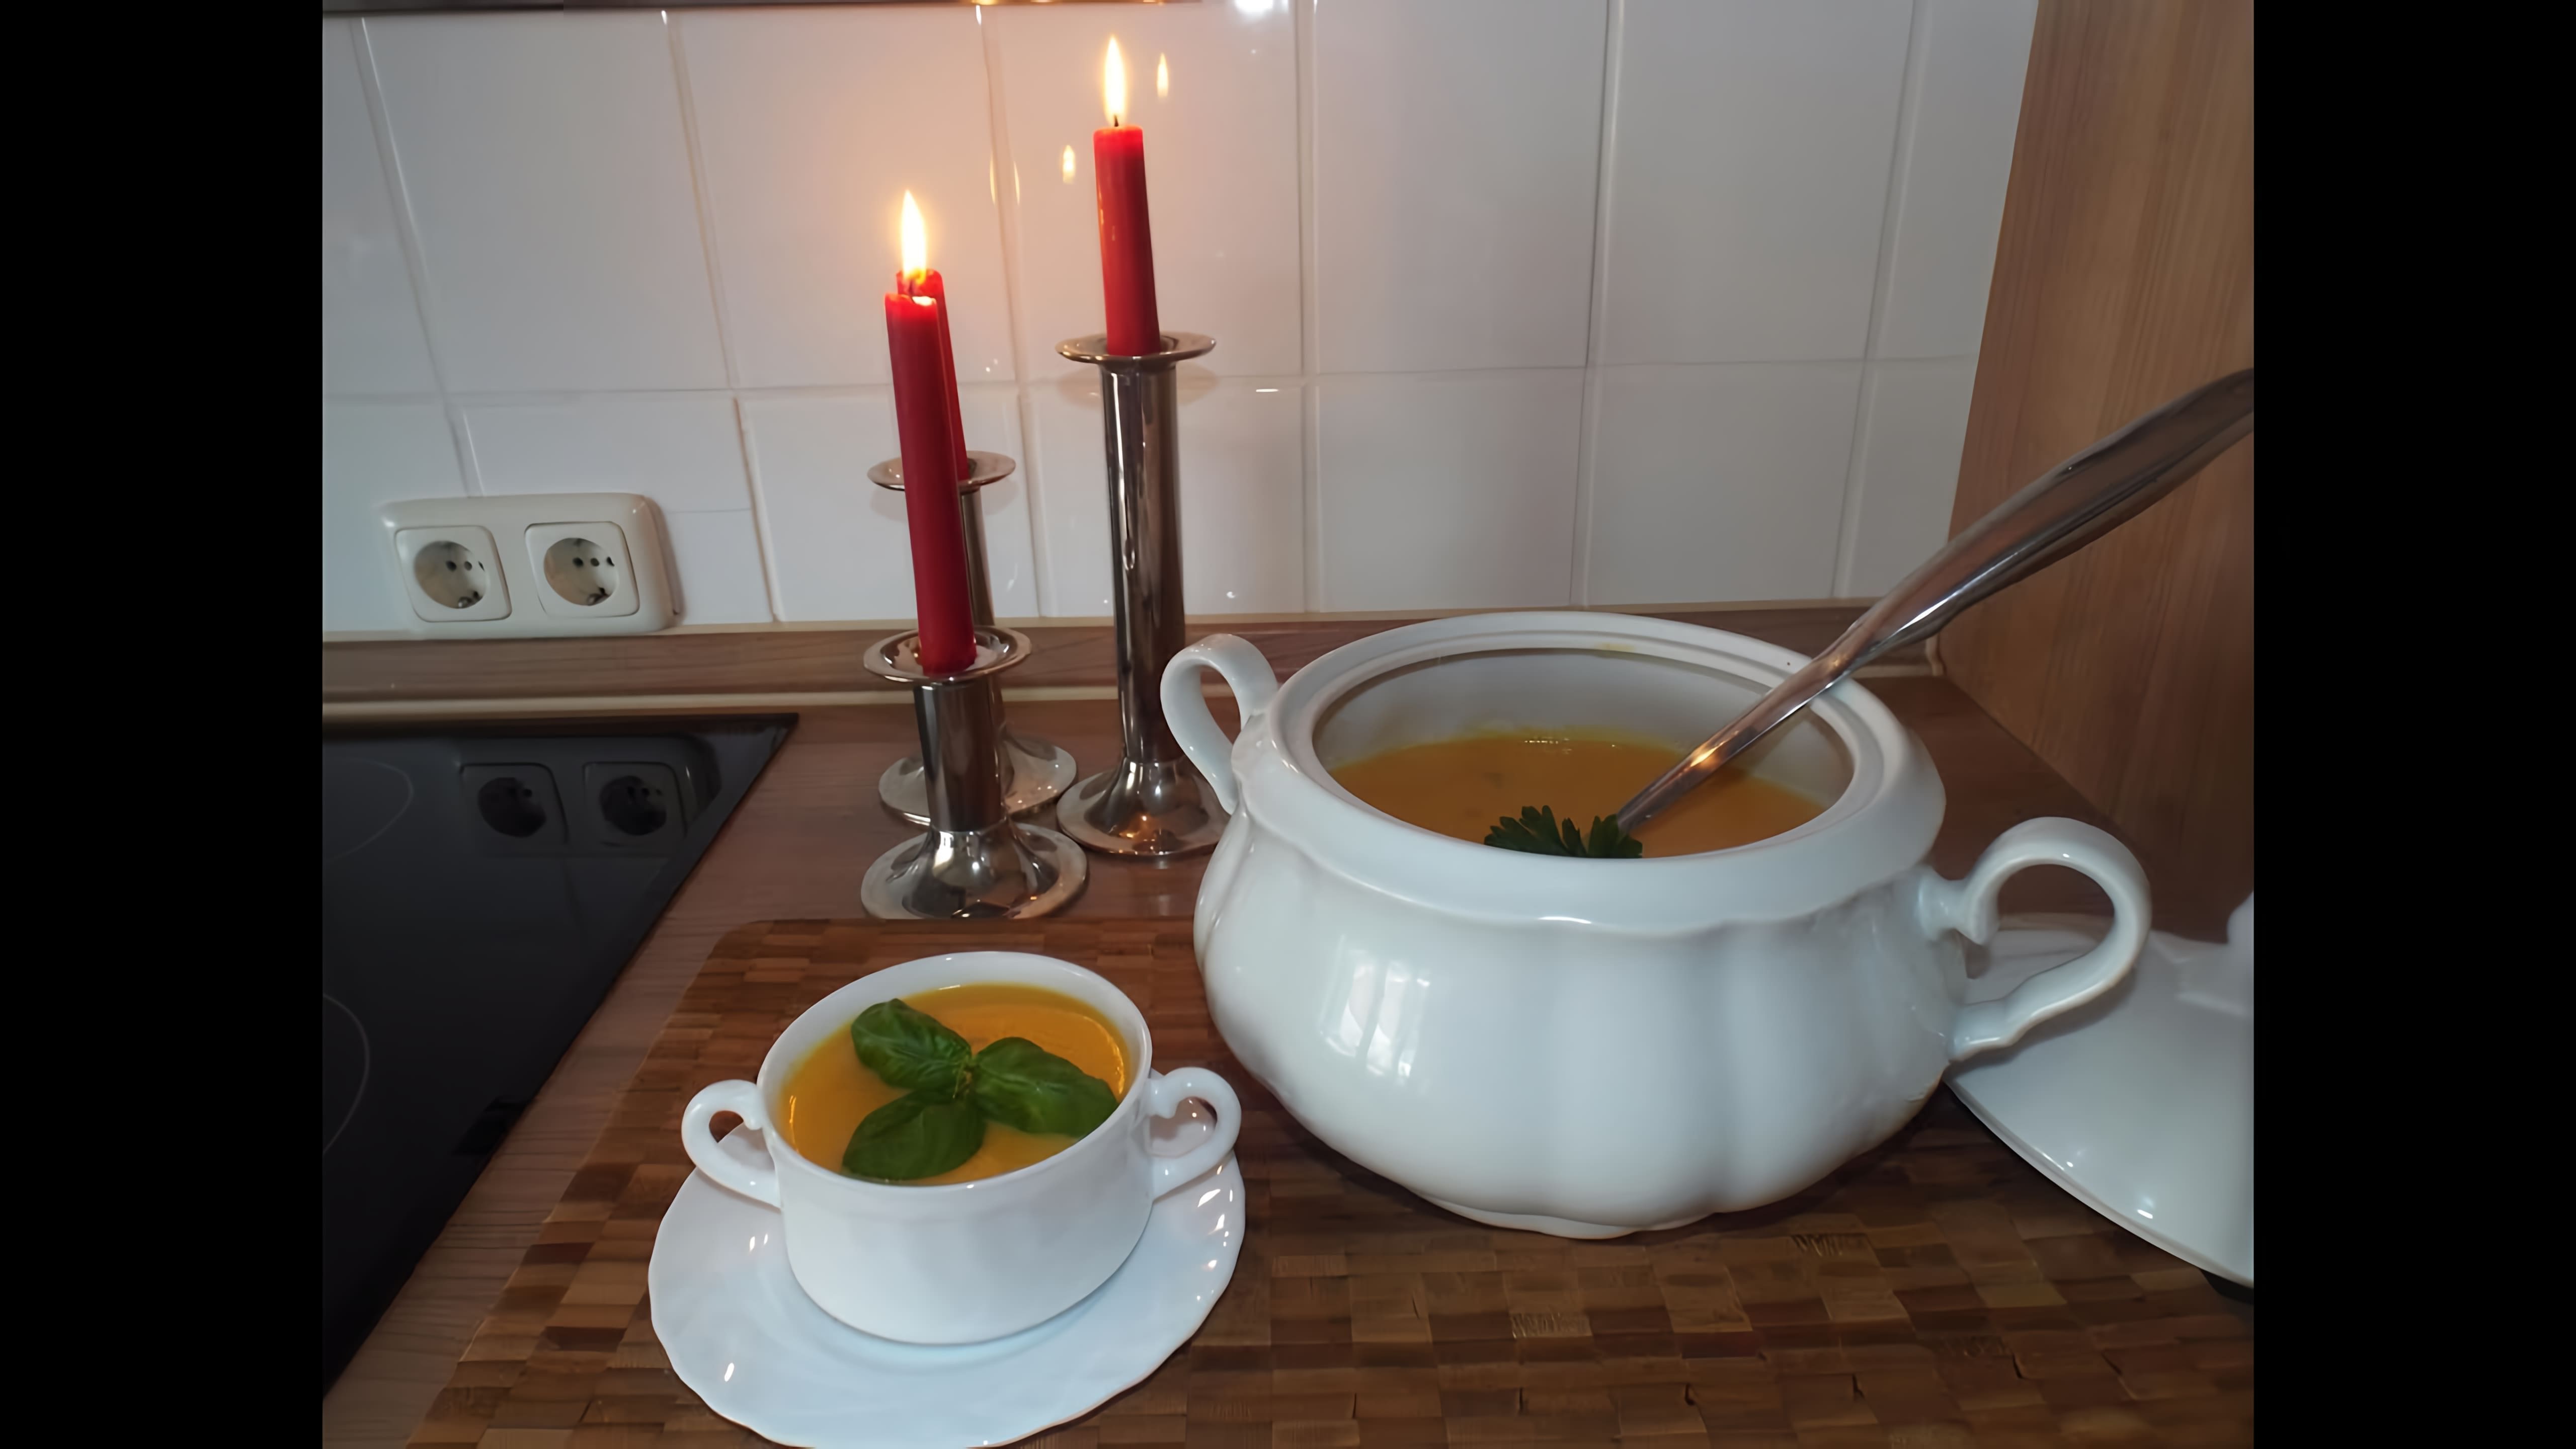 В этом видео демонстрируется рецепт приготовления картофельного супа-пюре